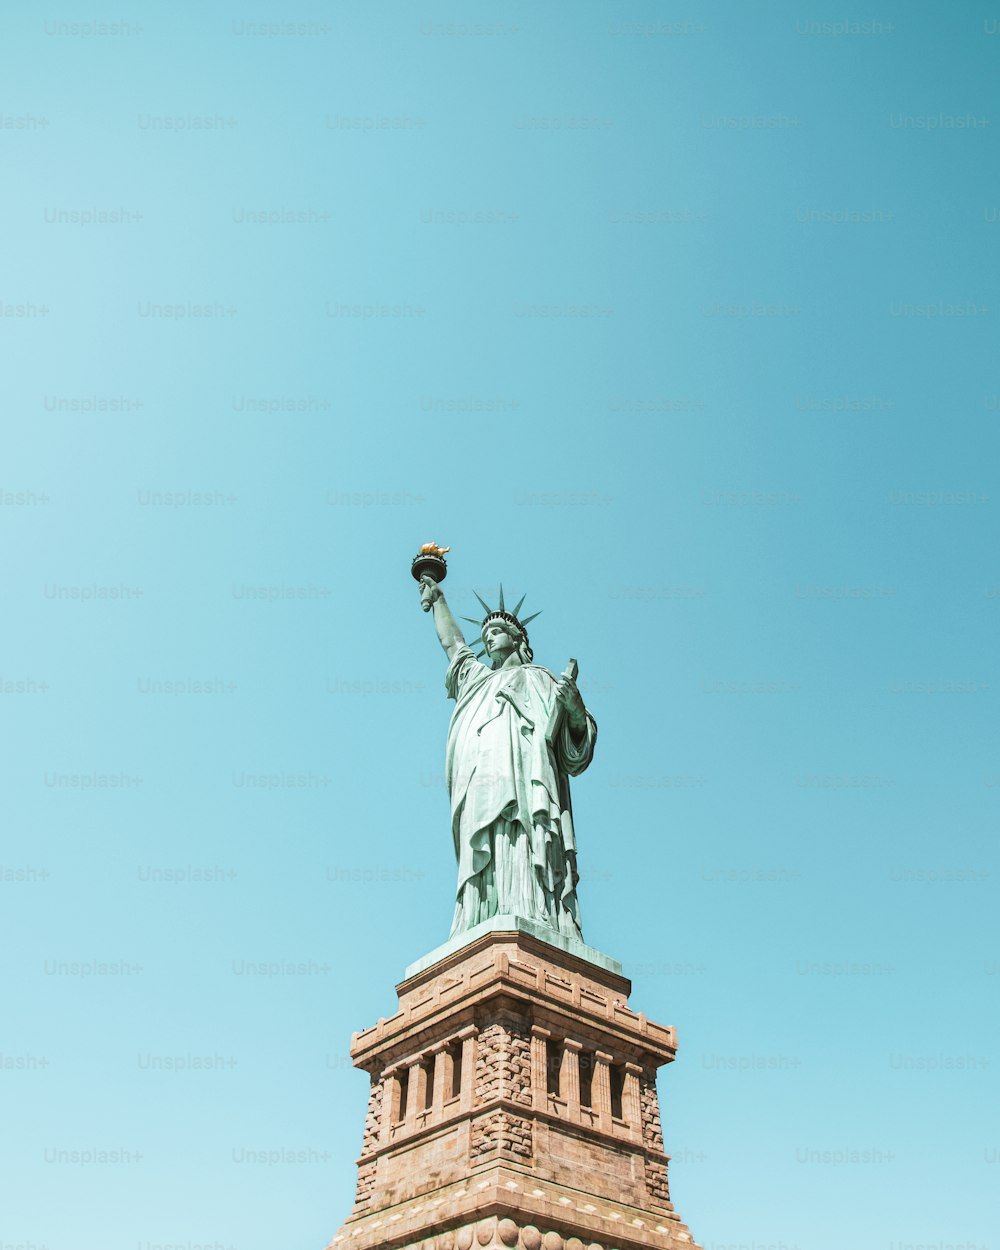 Die Freiheitsstatue wird vor blauem Himmel gezeigt